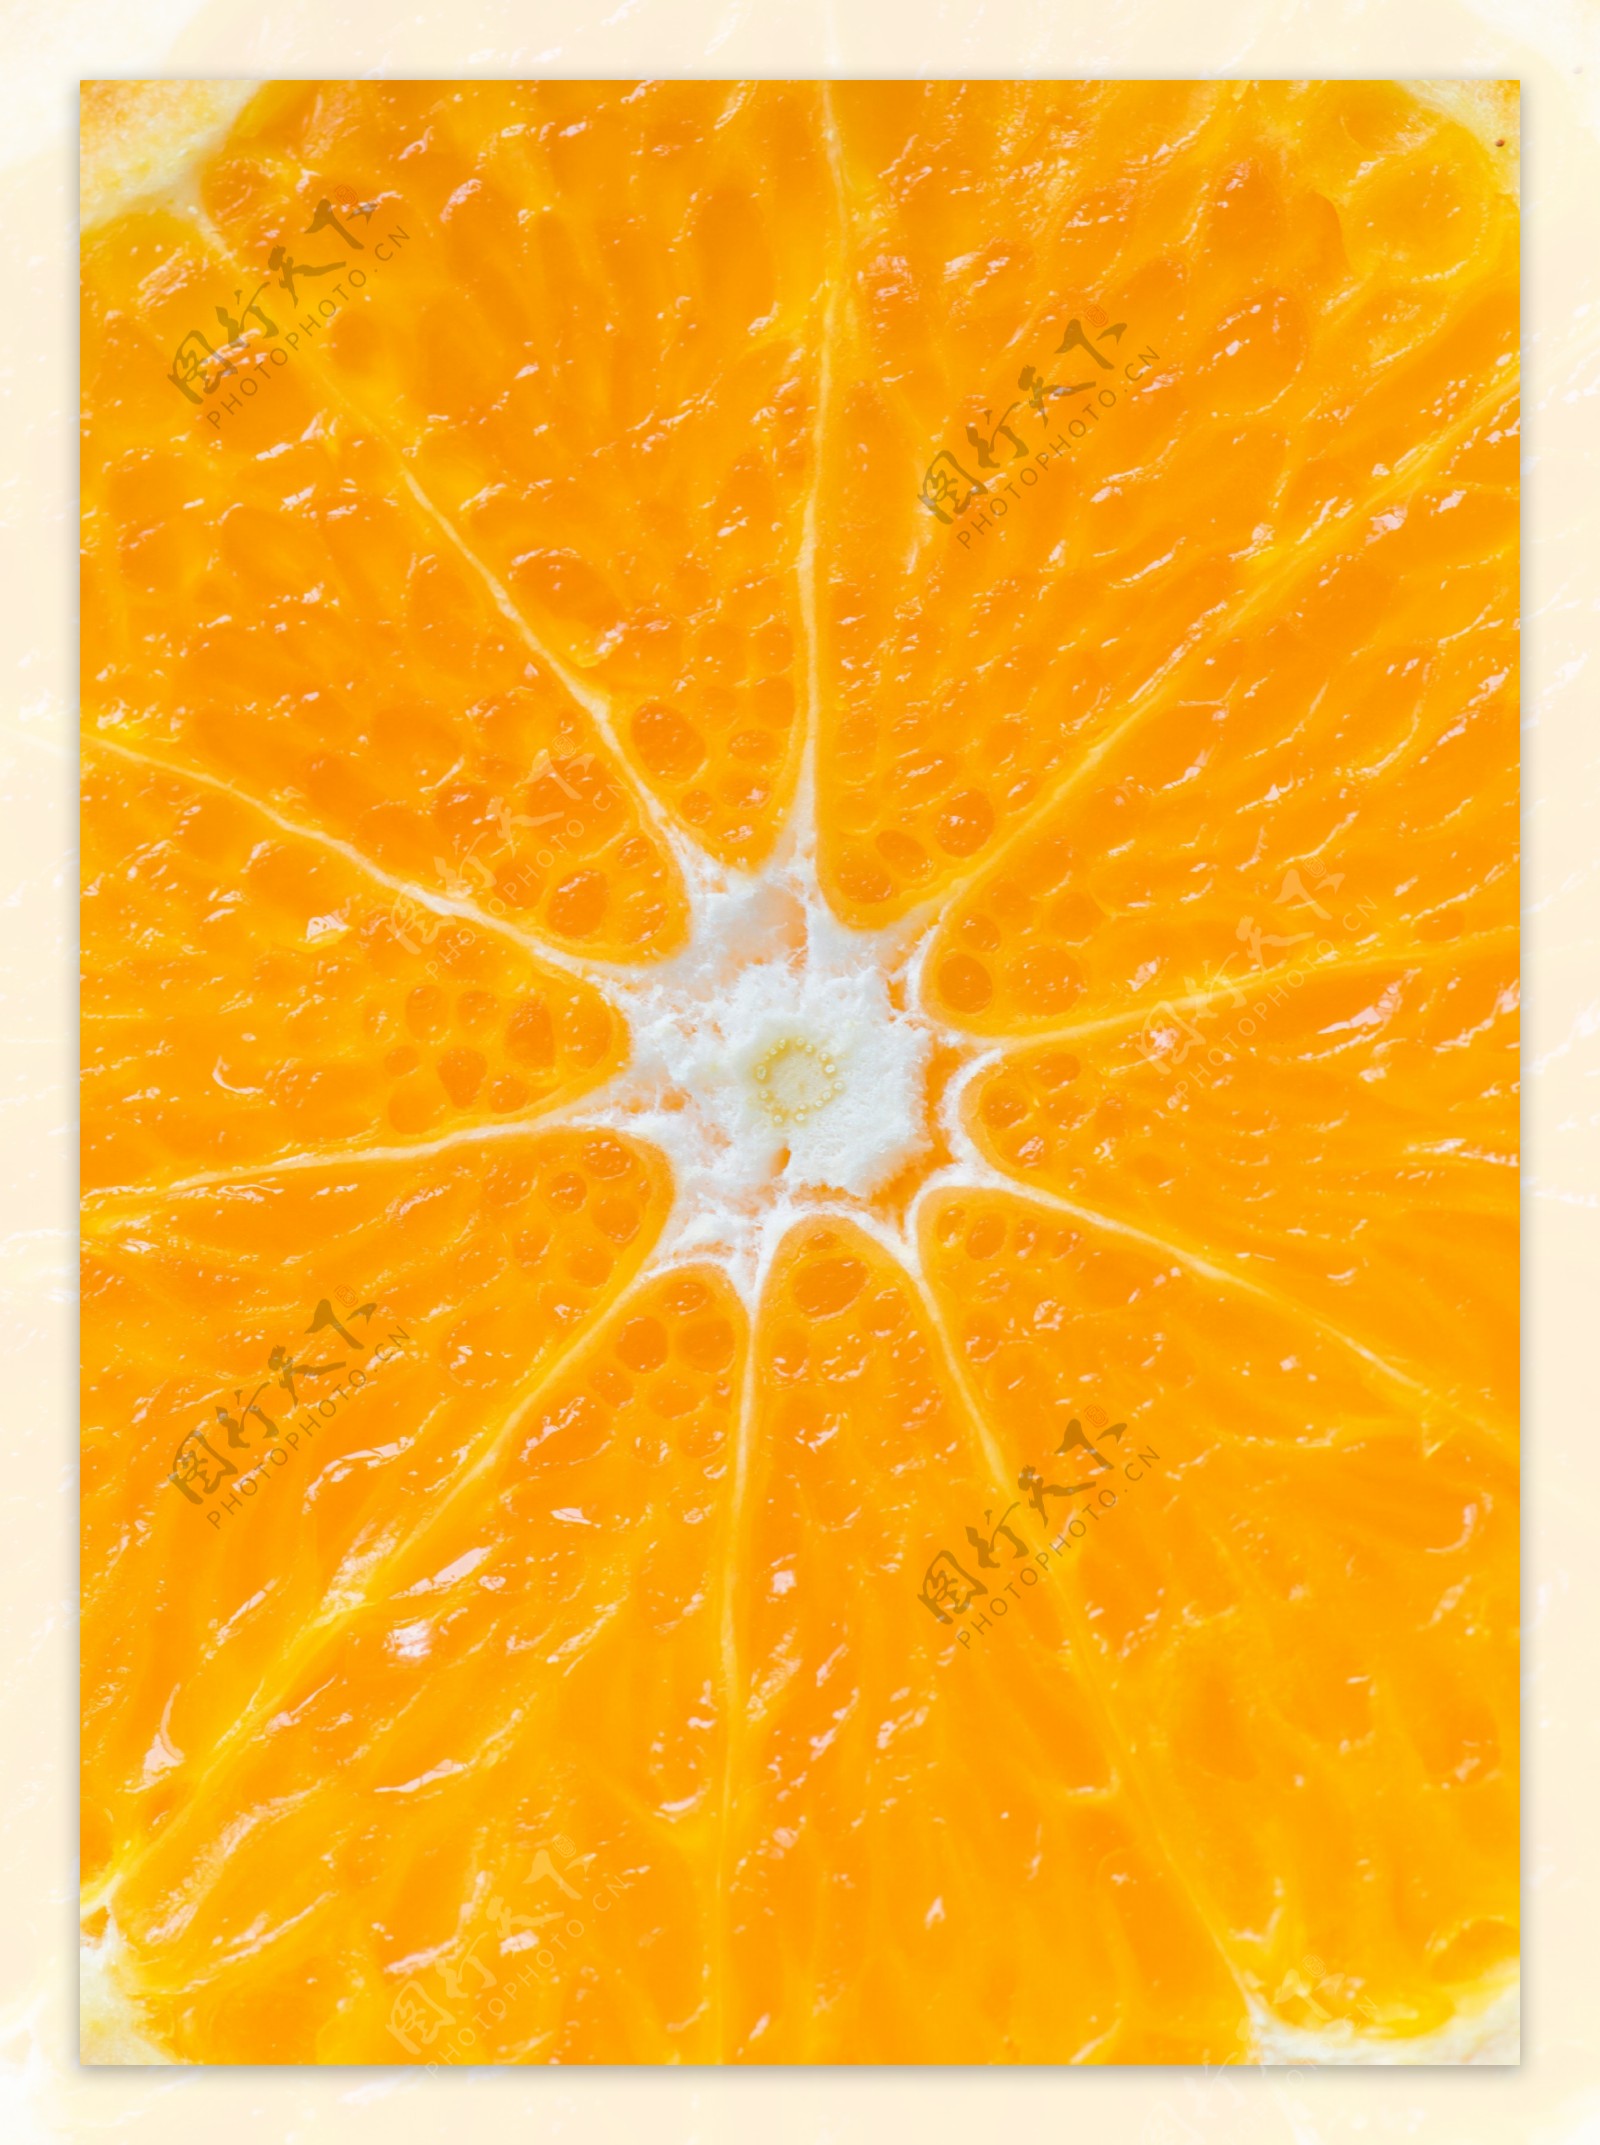 橙子果肉高清图